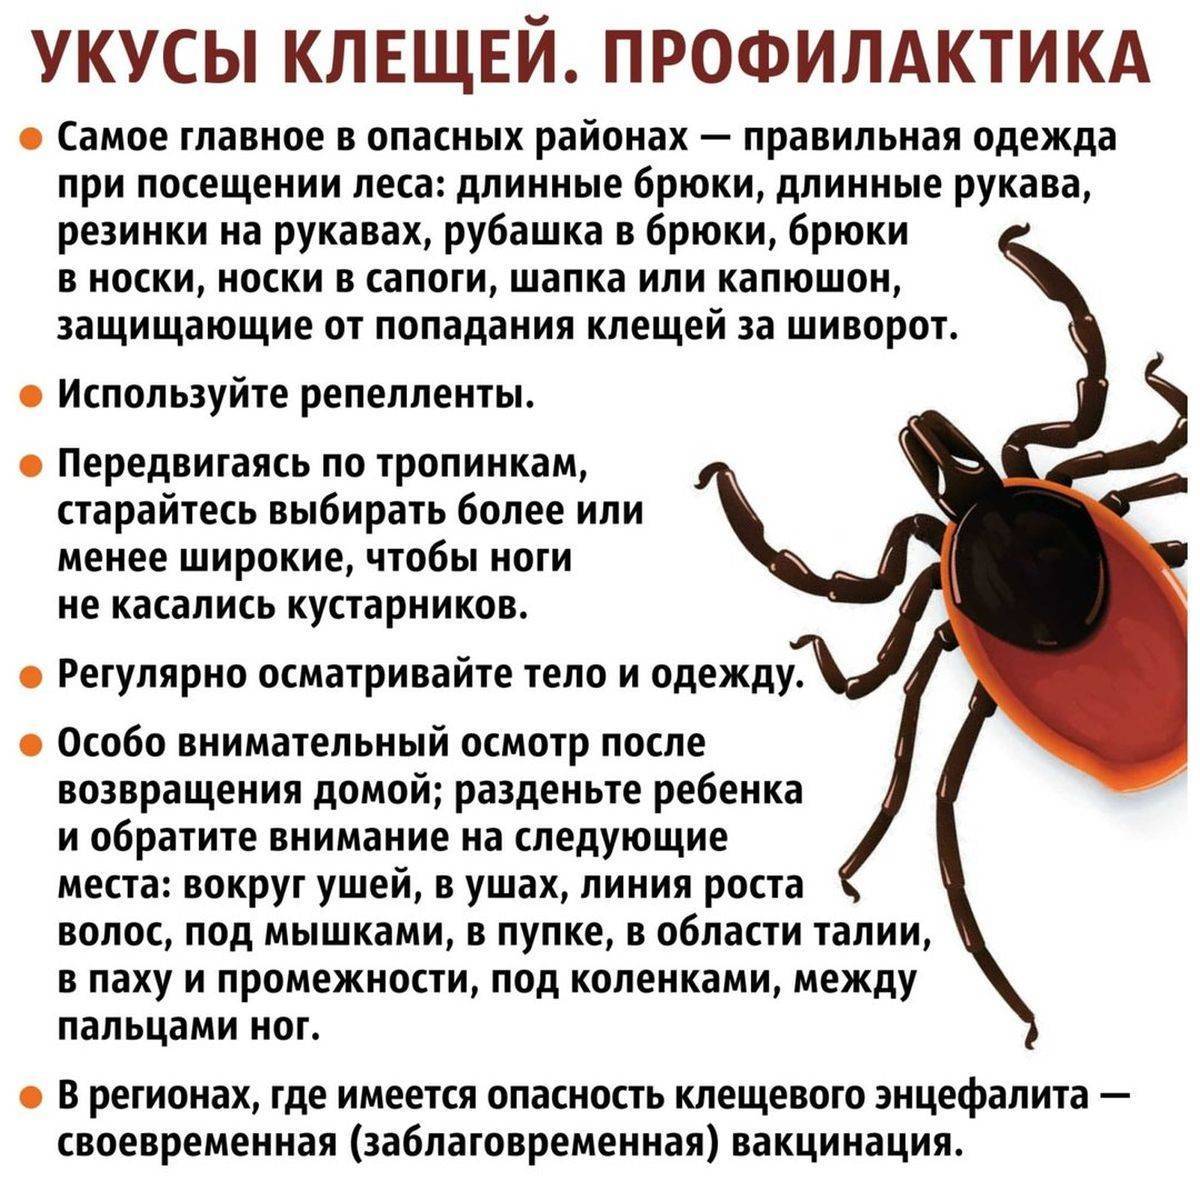 Адреса лабораторий и пунктов профилактики клещевых инфекций » энцефалит.ру